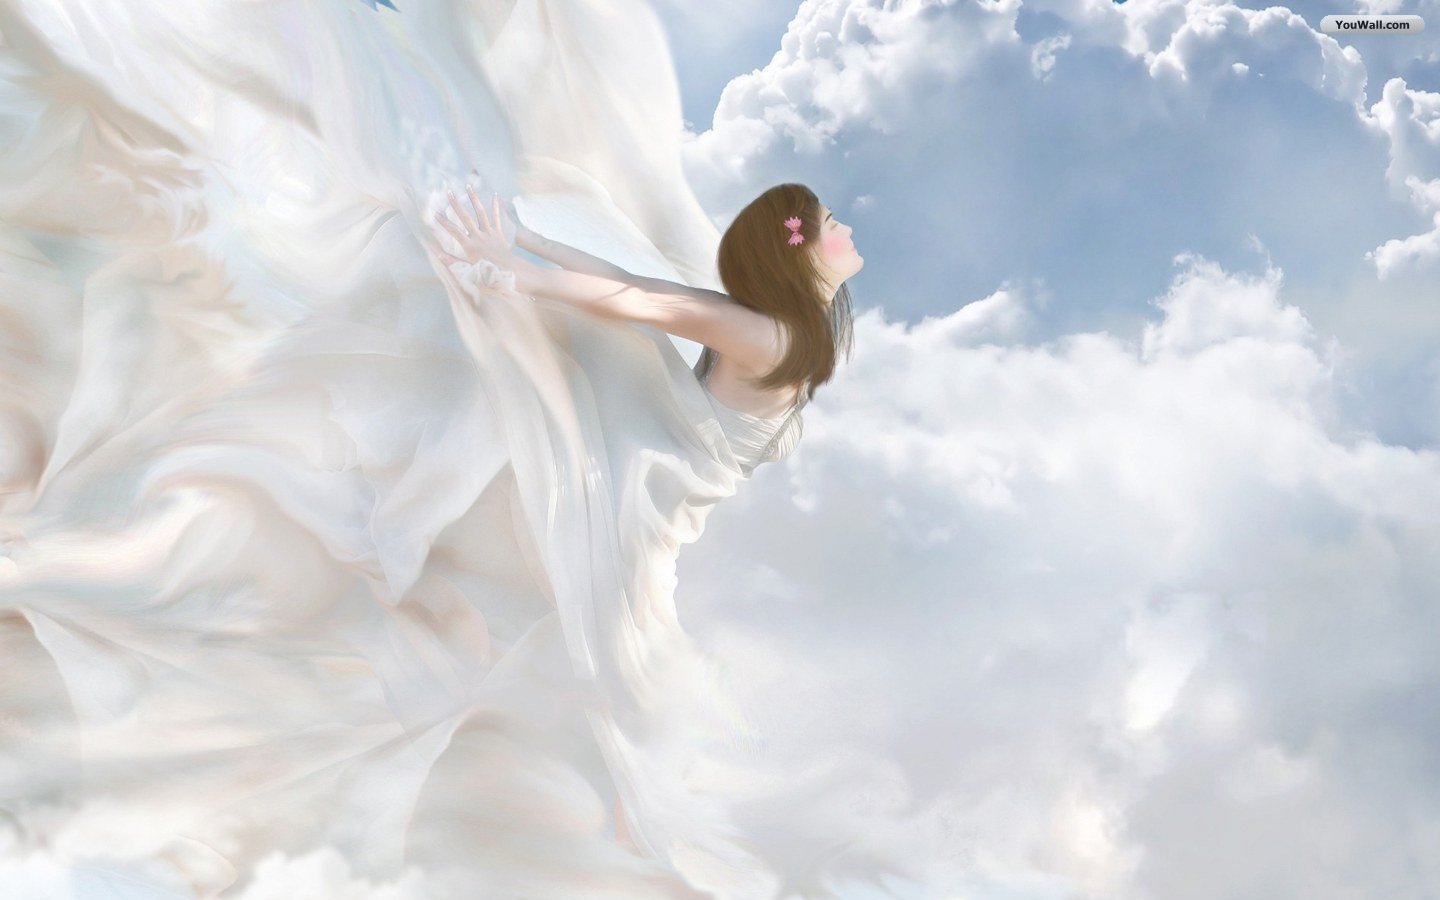  سوالهای متداول آشنایی با فرشتگان – بخش اول